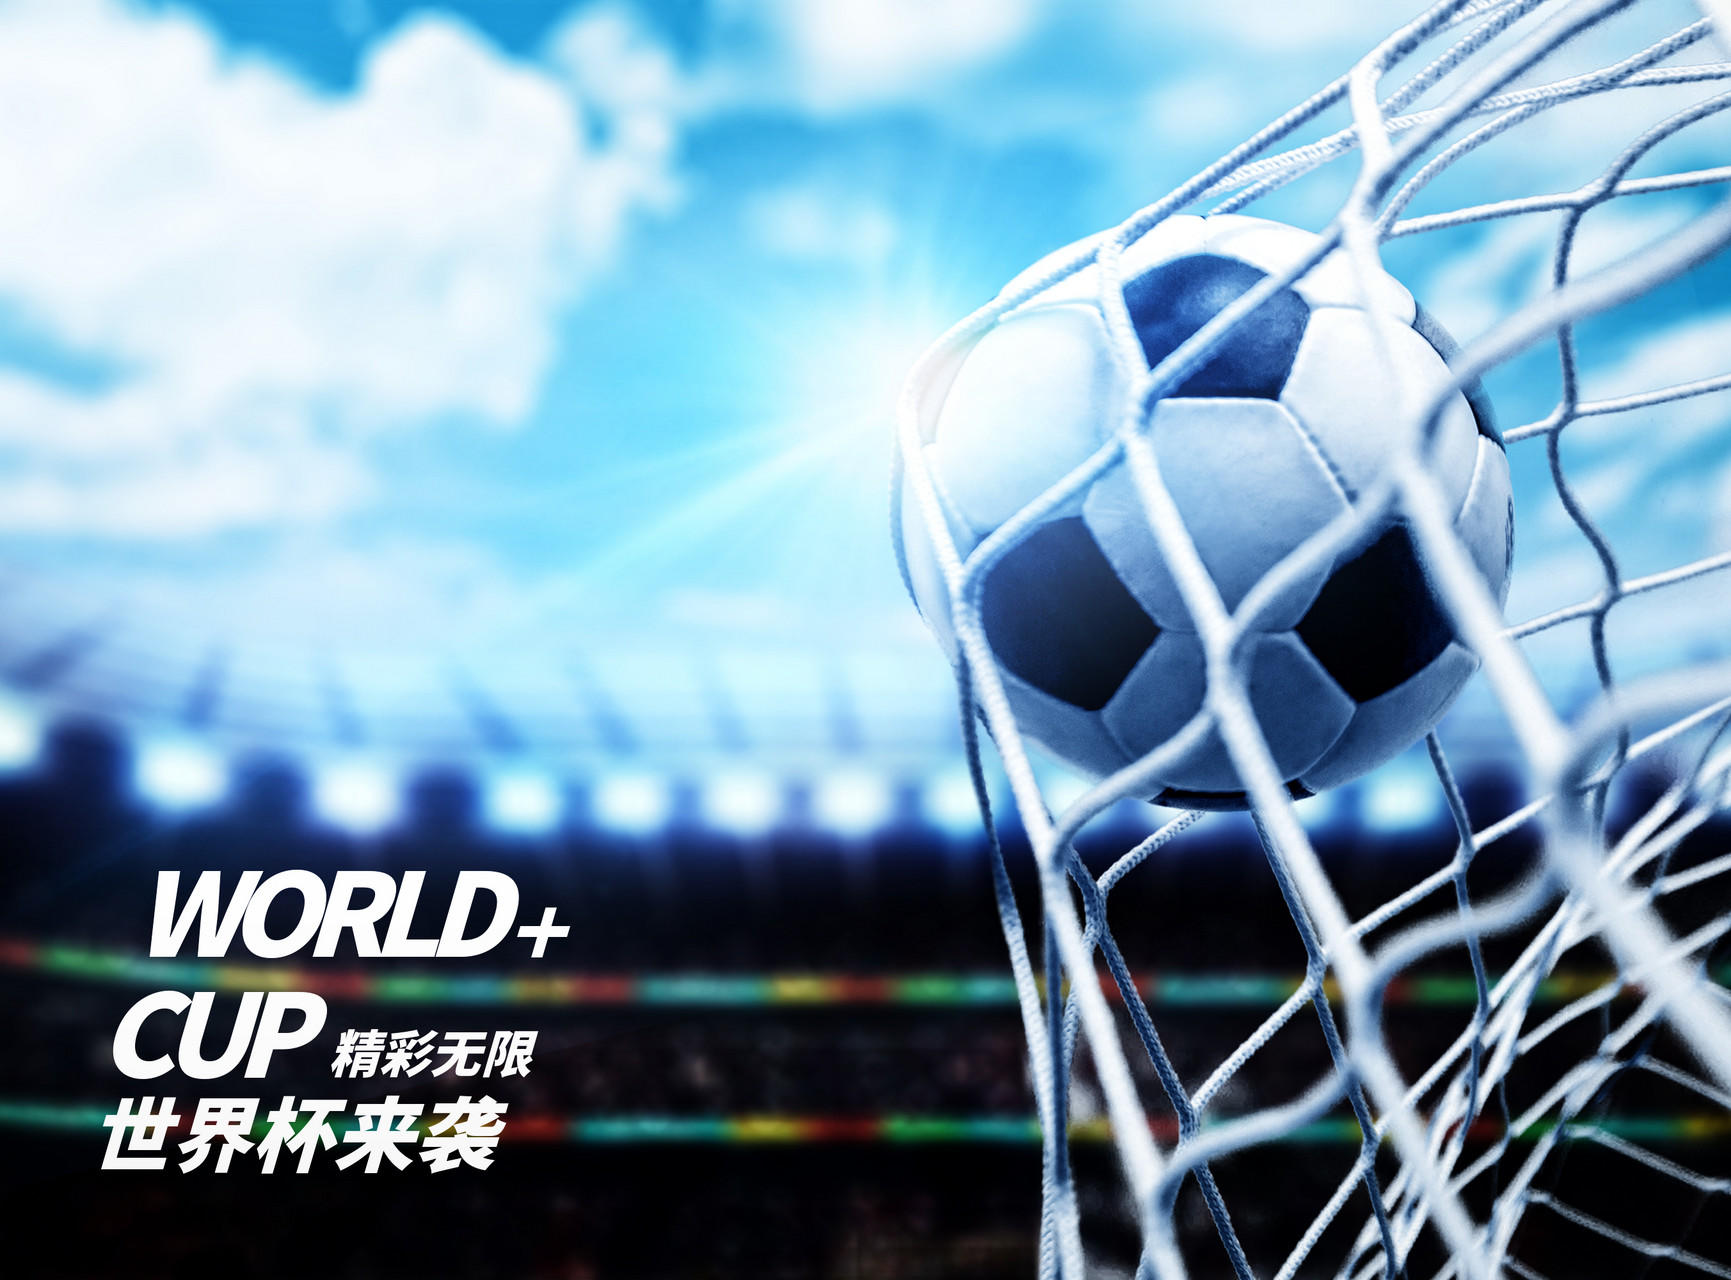 世界杯营销5大方向详情解析